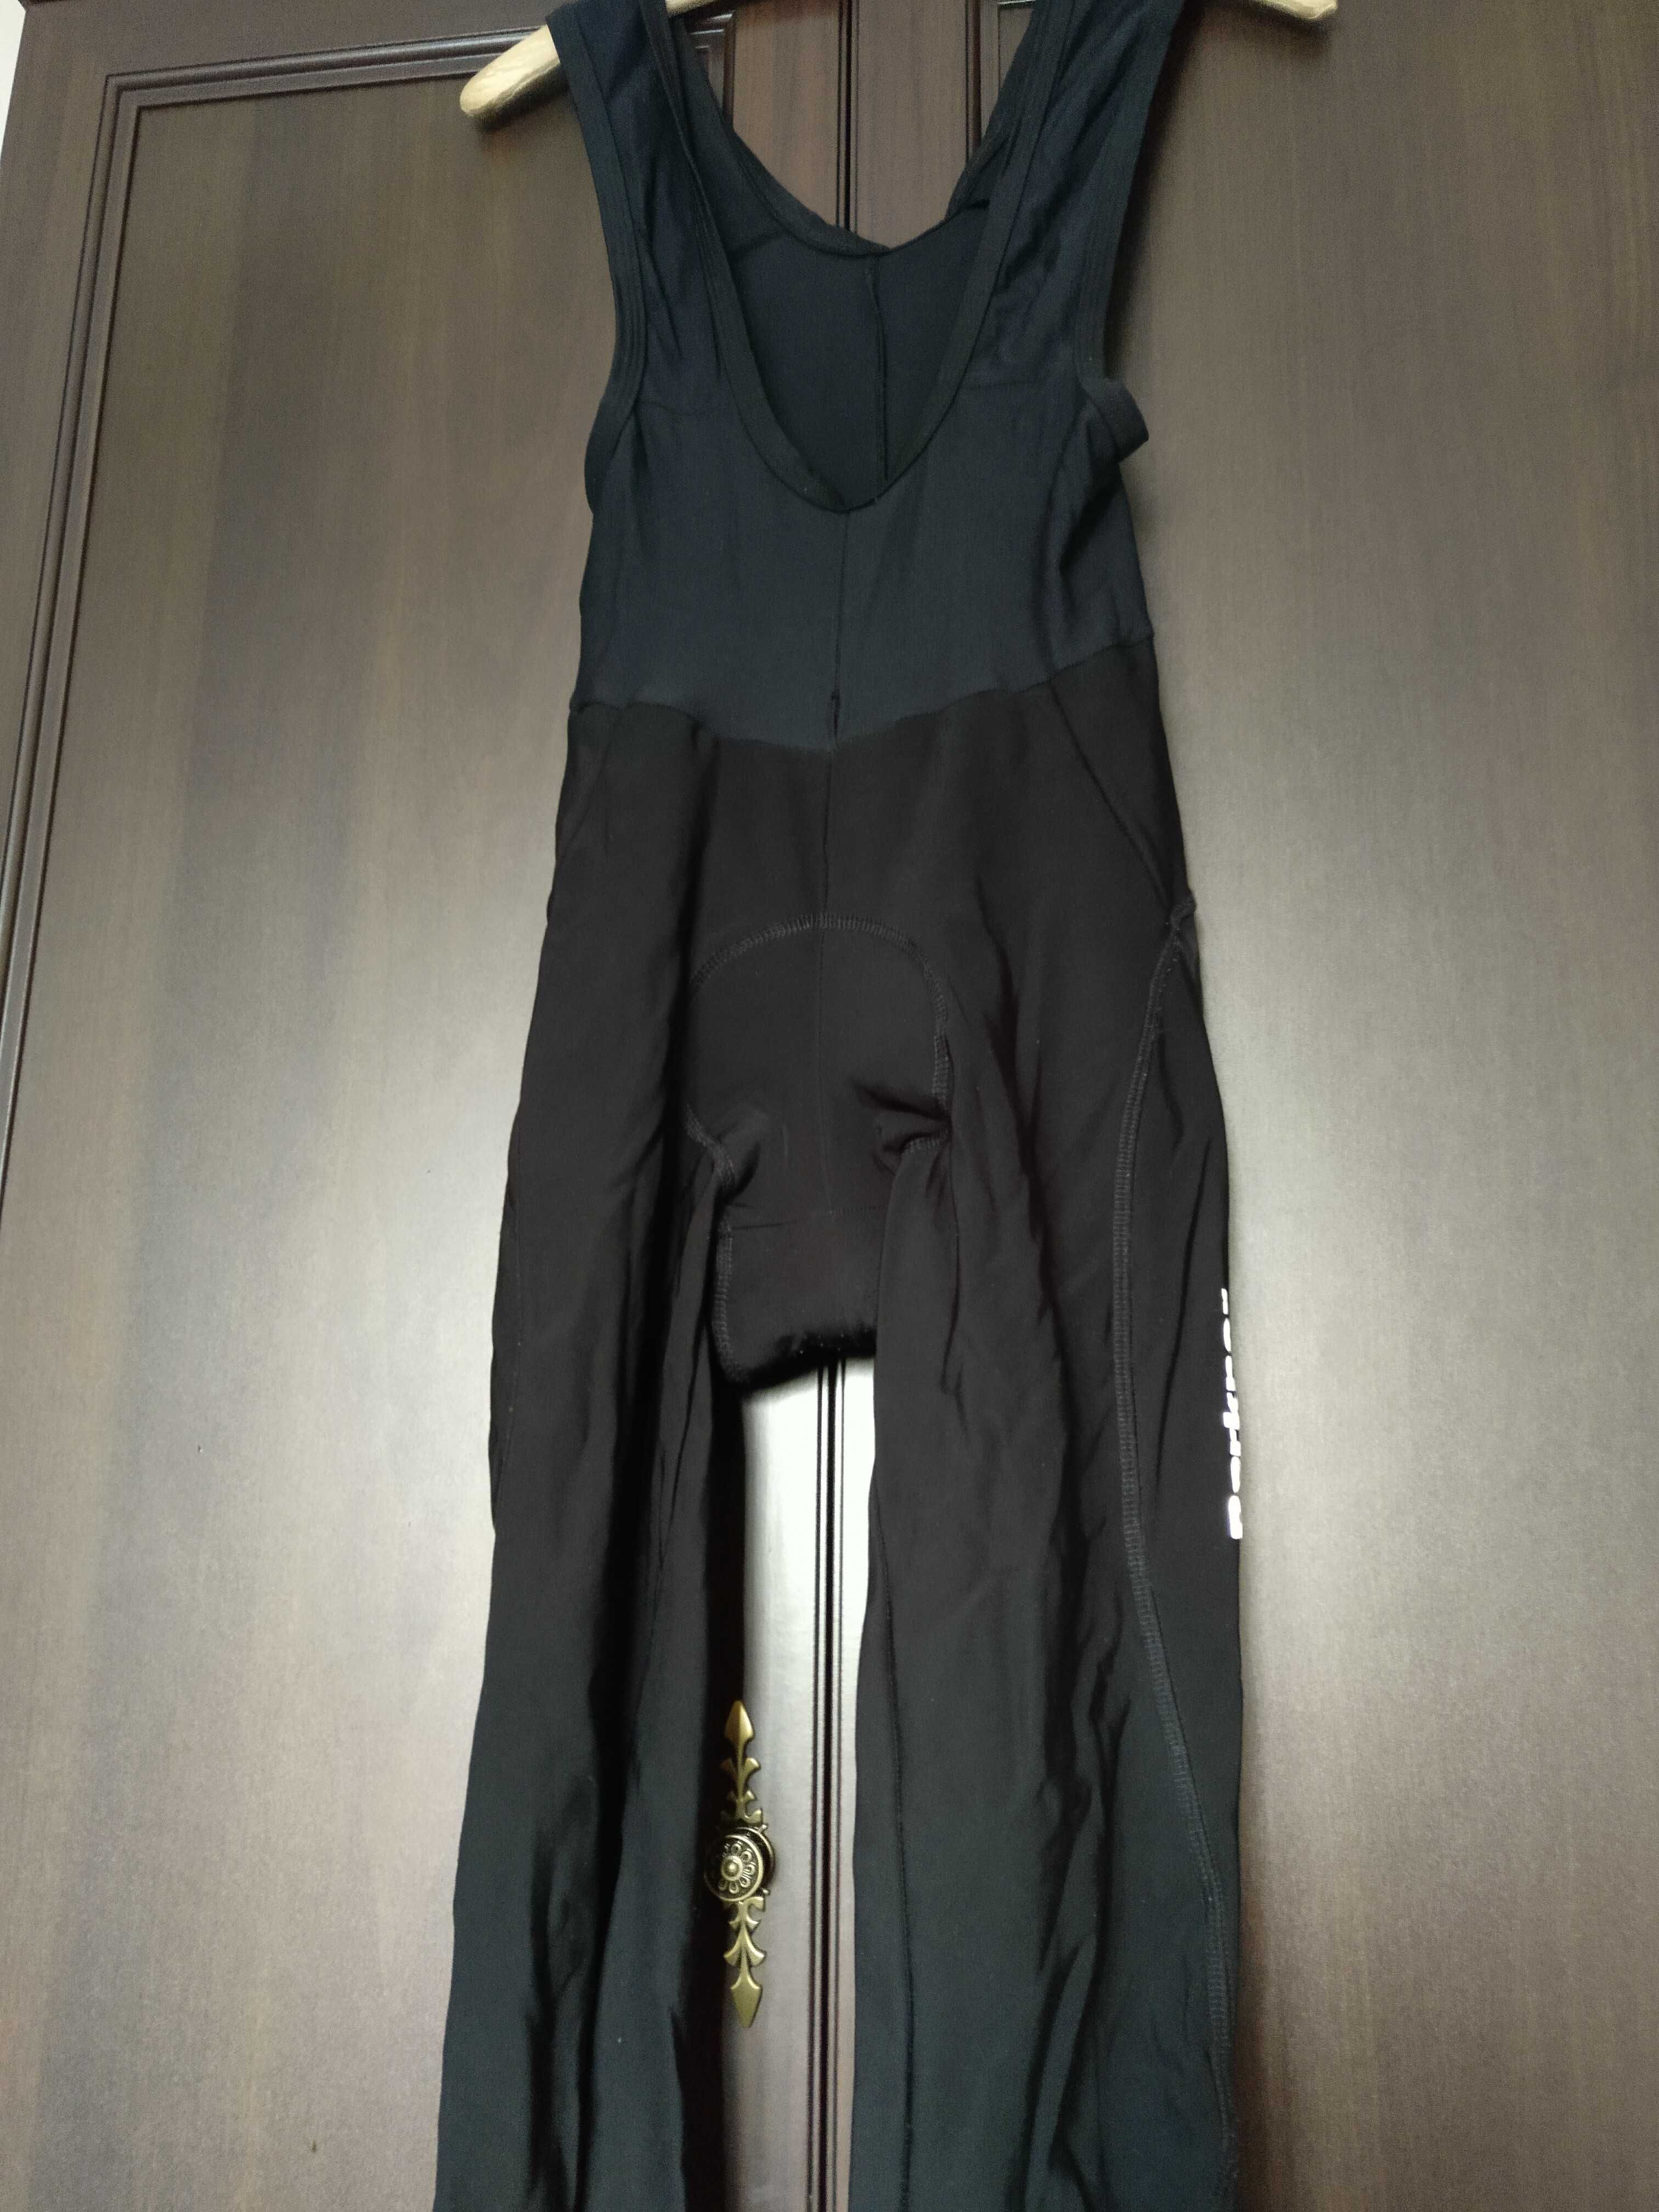 Berkner spodnie rowerowe męskie rozmiar S, 2 pary, zestaw